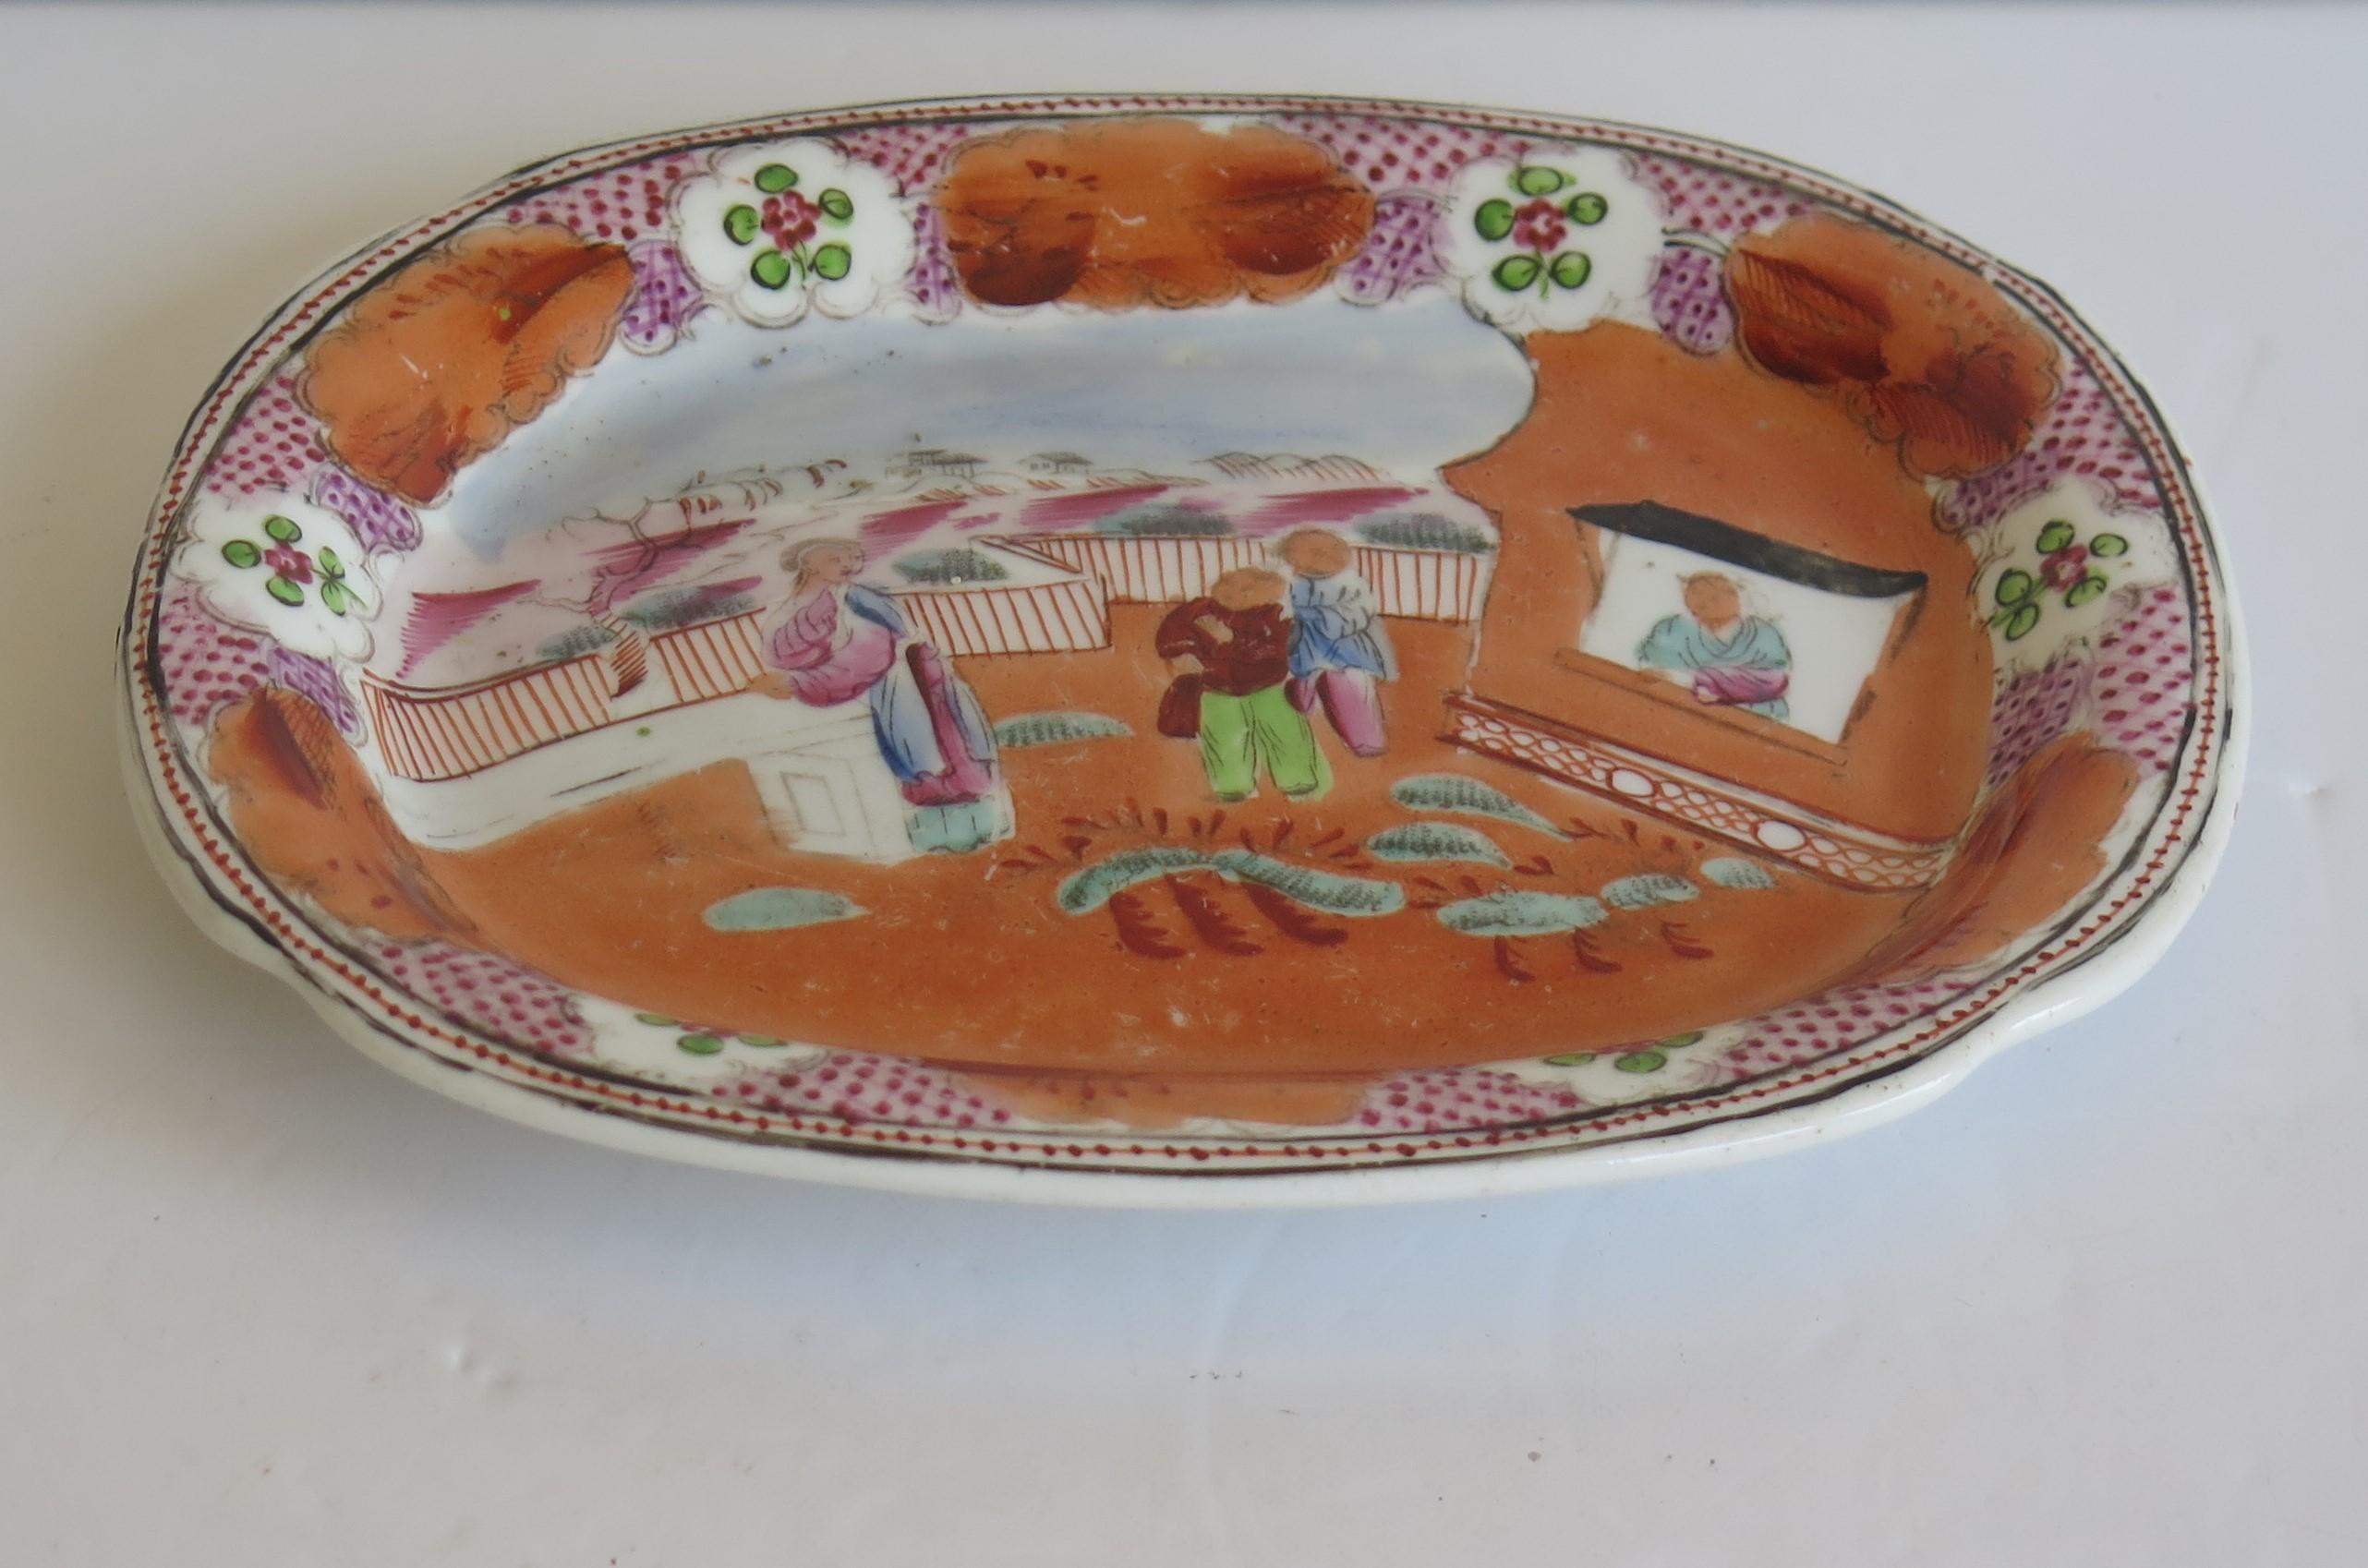 Dies ist eine harte Paste Porzellan Dish oder kleine Platte von New Hall aus sehr frühen 19. Jahrhundert, um 1800.

Diese Schale oder Platte ist auf einem niedrigen Fuß gut getopft. 

Die Dekoration ist handgemalt in kräftiger Emaille in einem